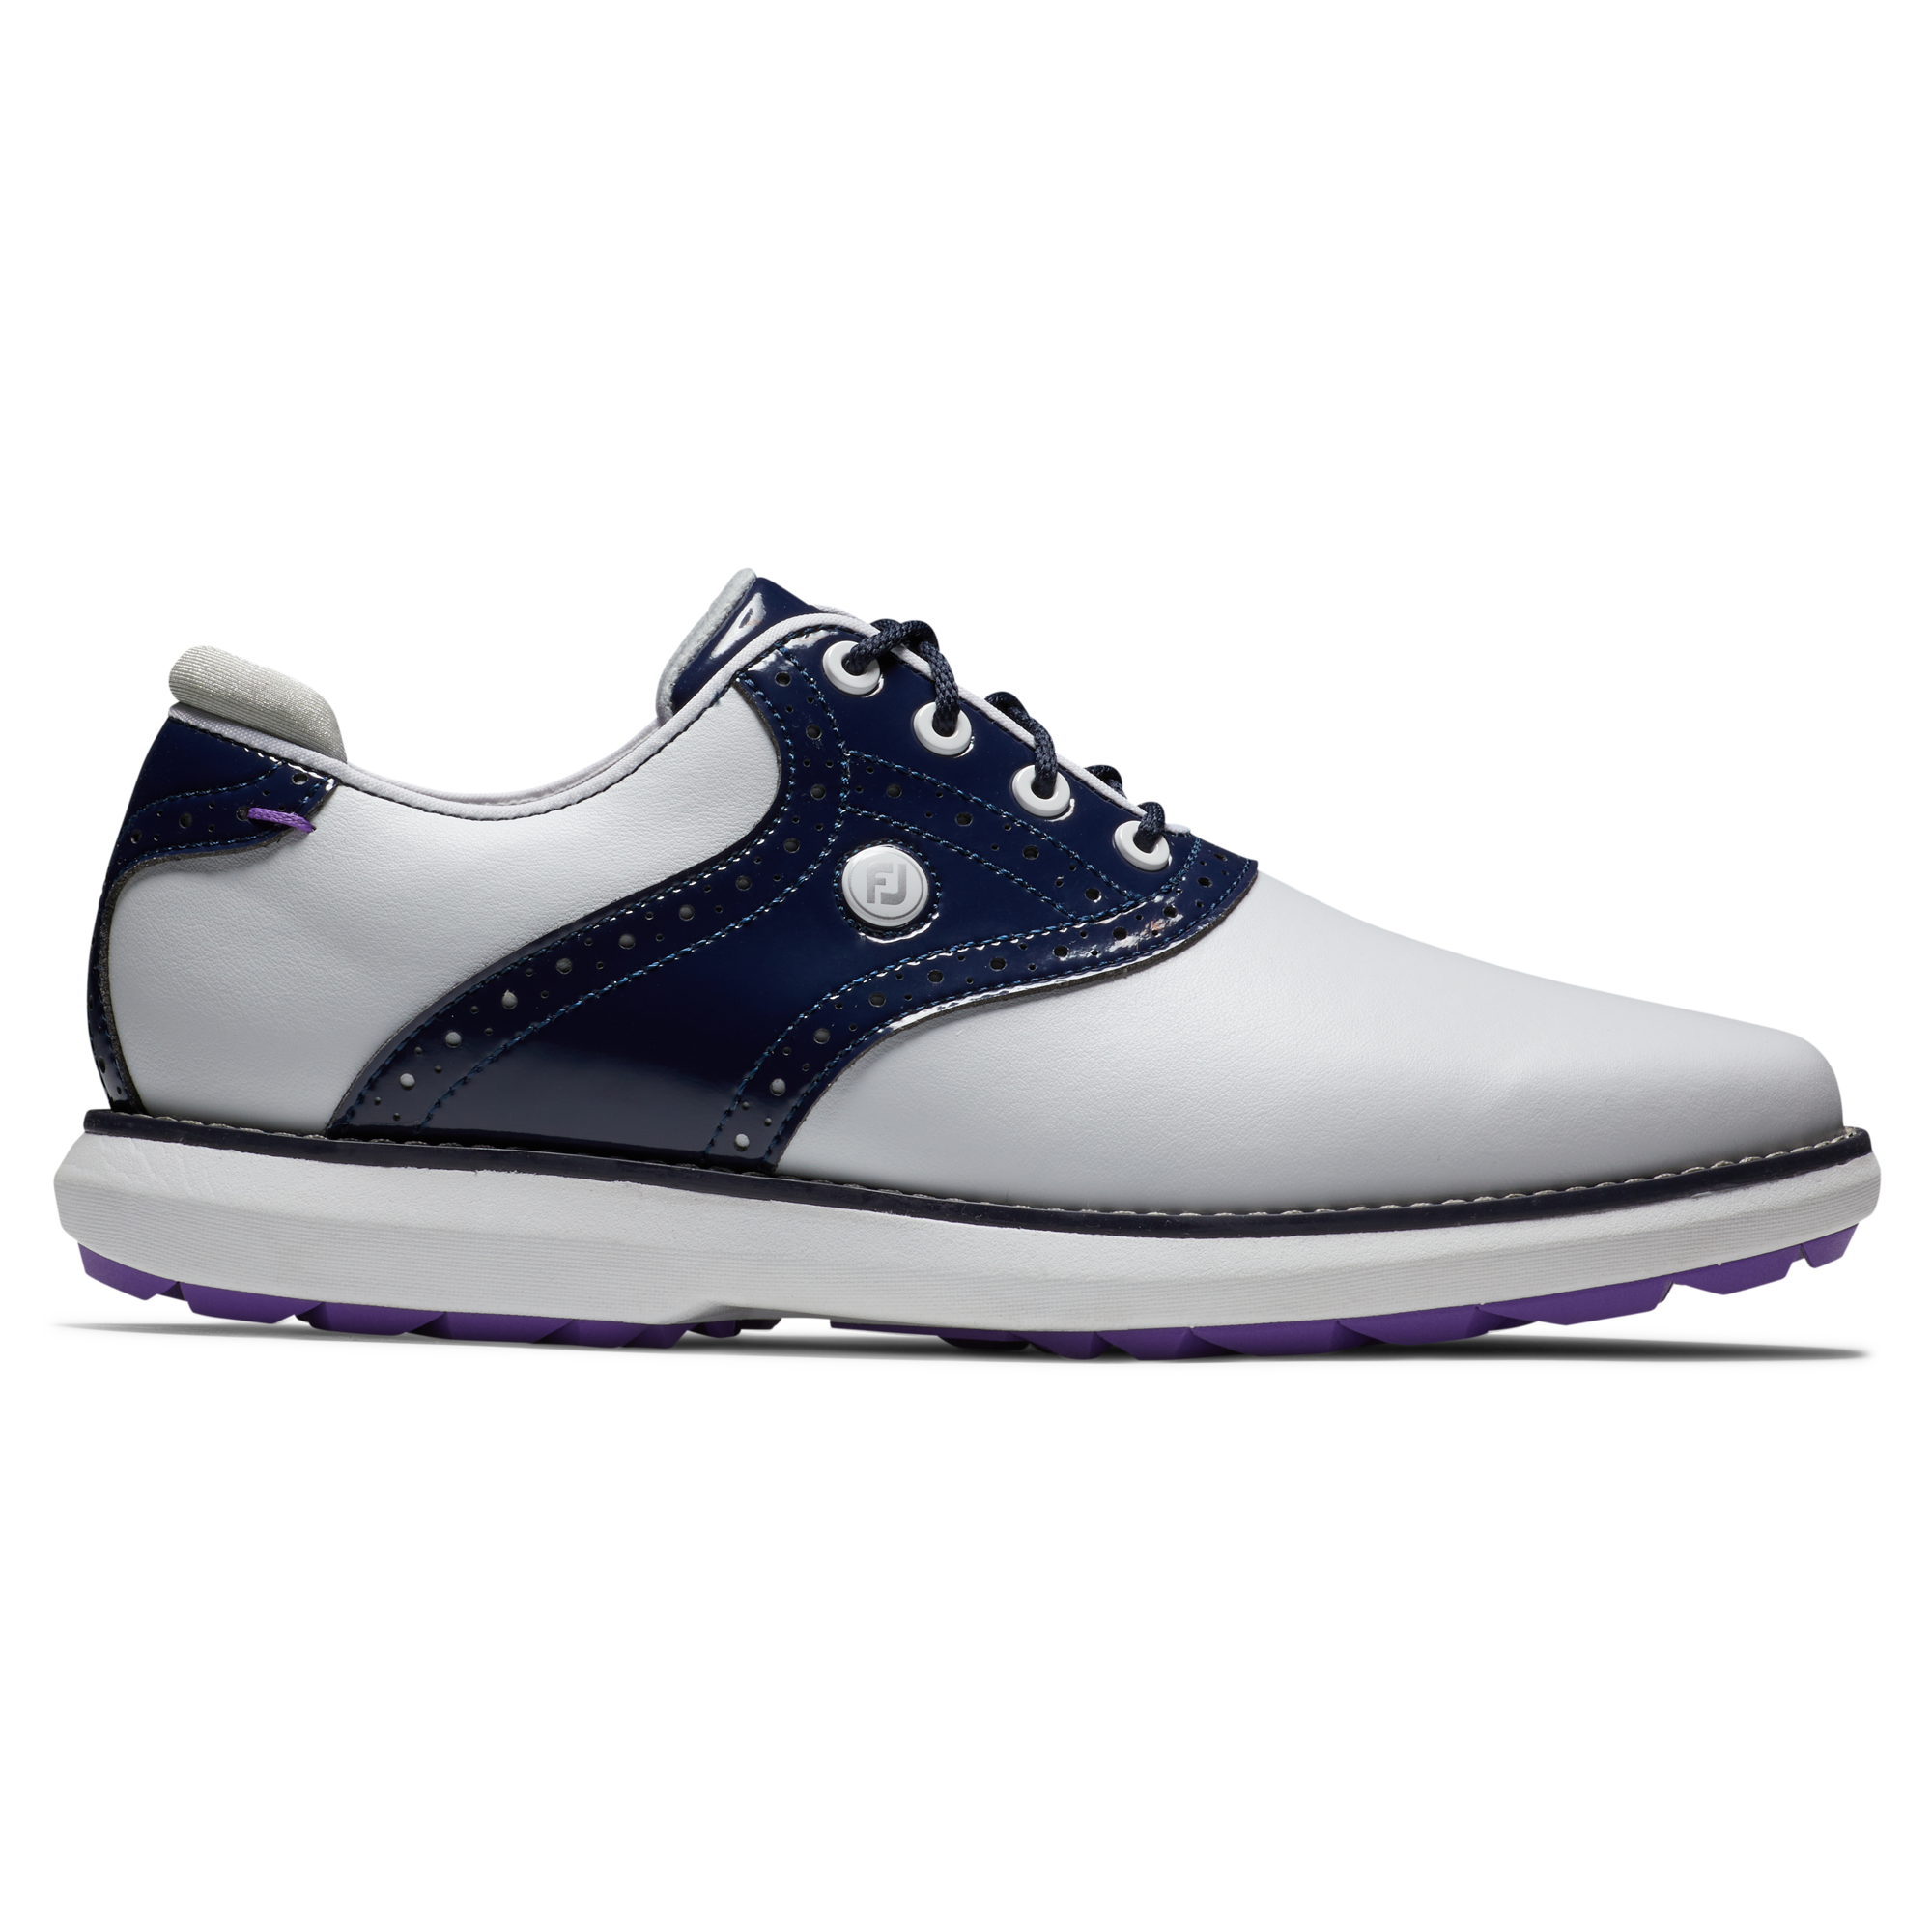 FootJoy Traditions dámské golfové boty, bílé/tmavě modré, vel. 5,5 UK DOPRODEJ